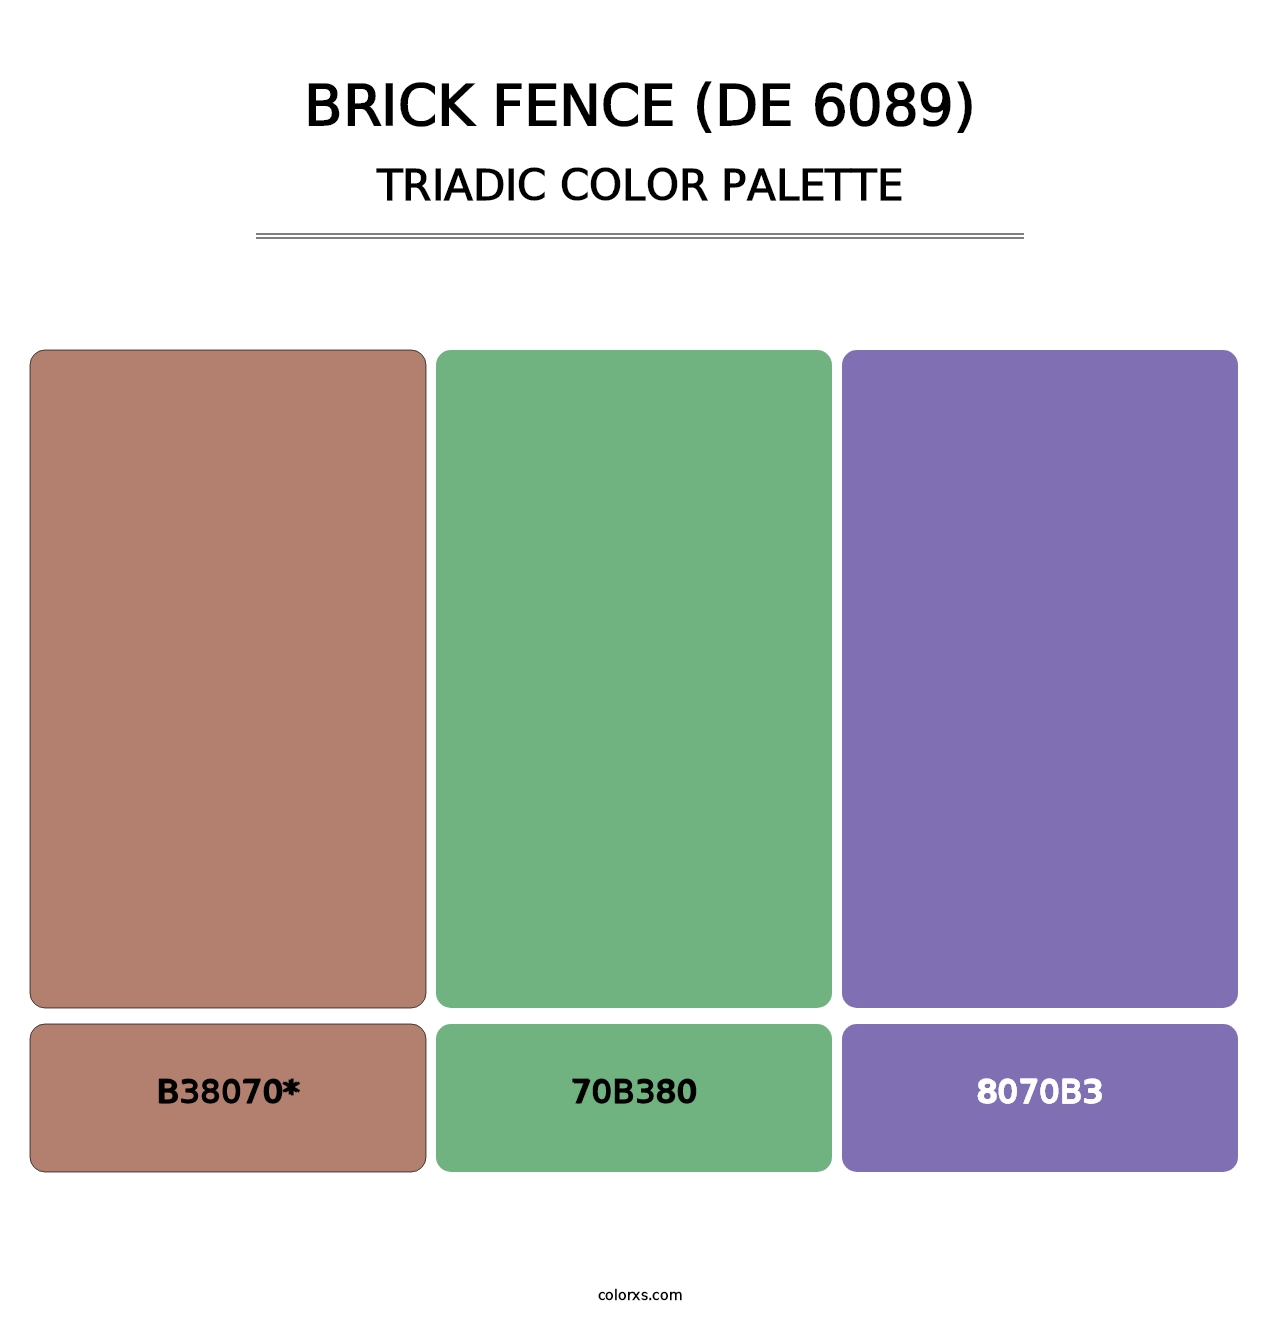 Brick Fence (DE 6089) - Triadic Color Palette